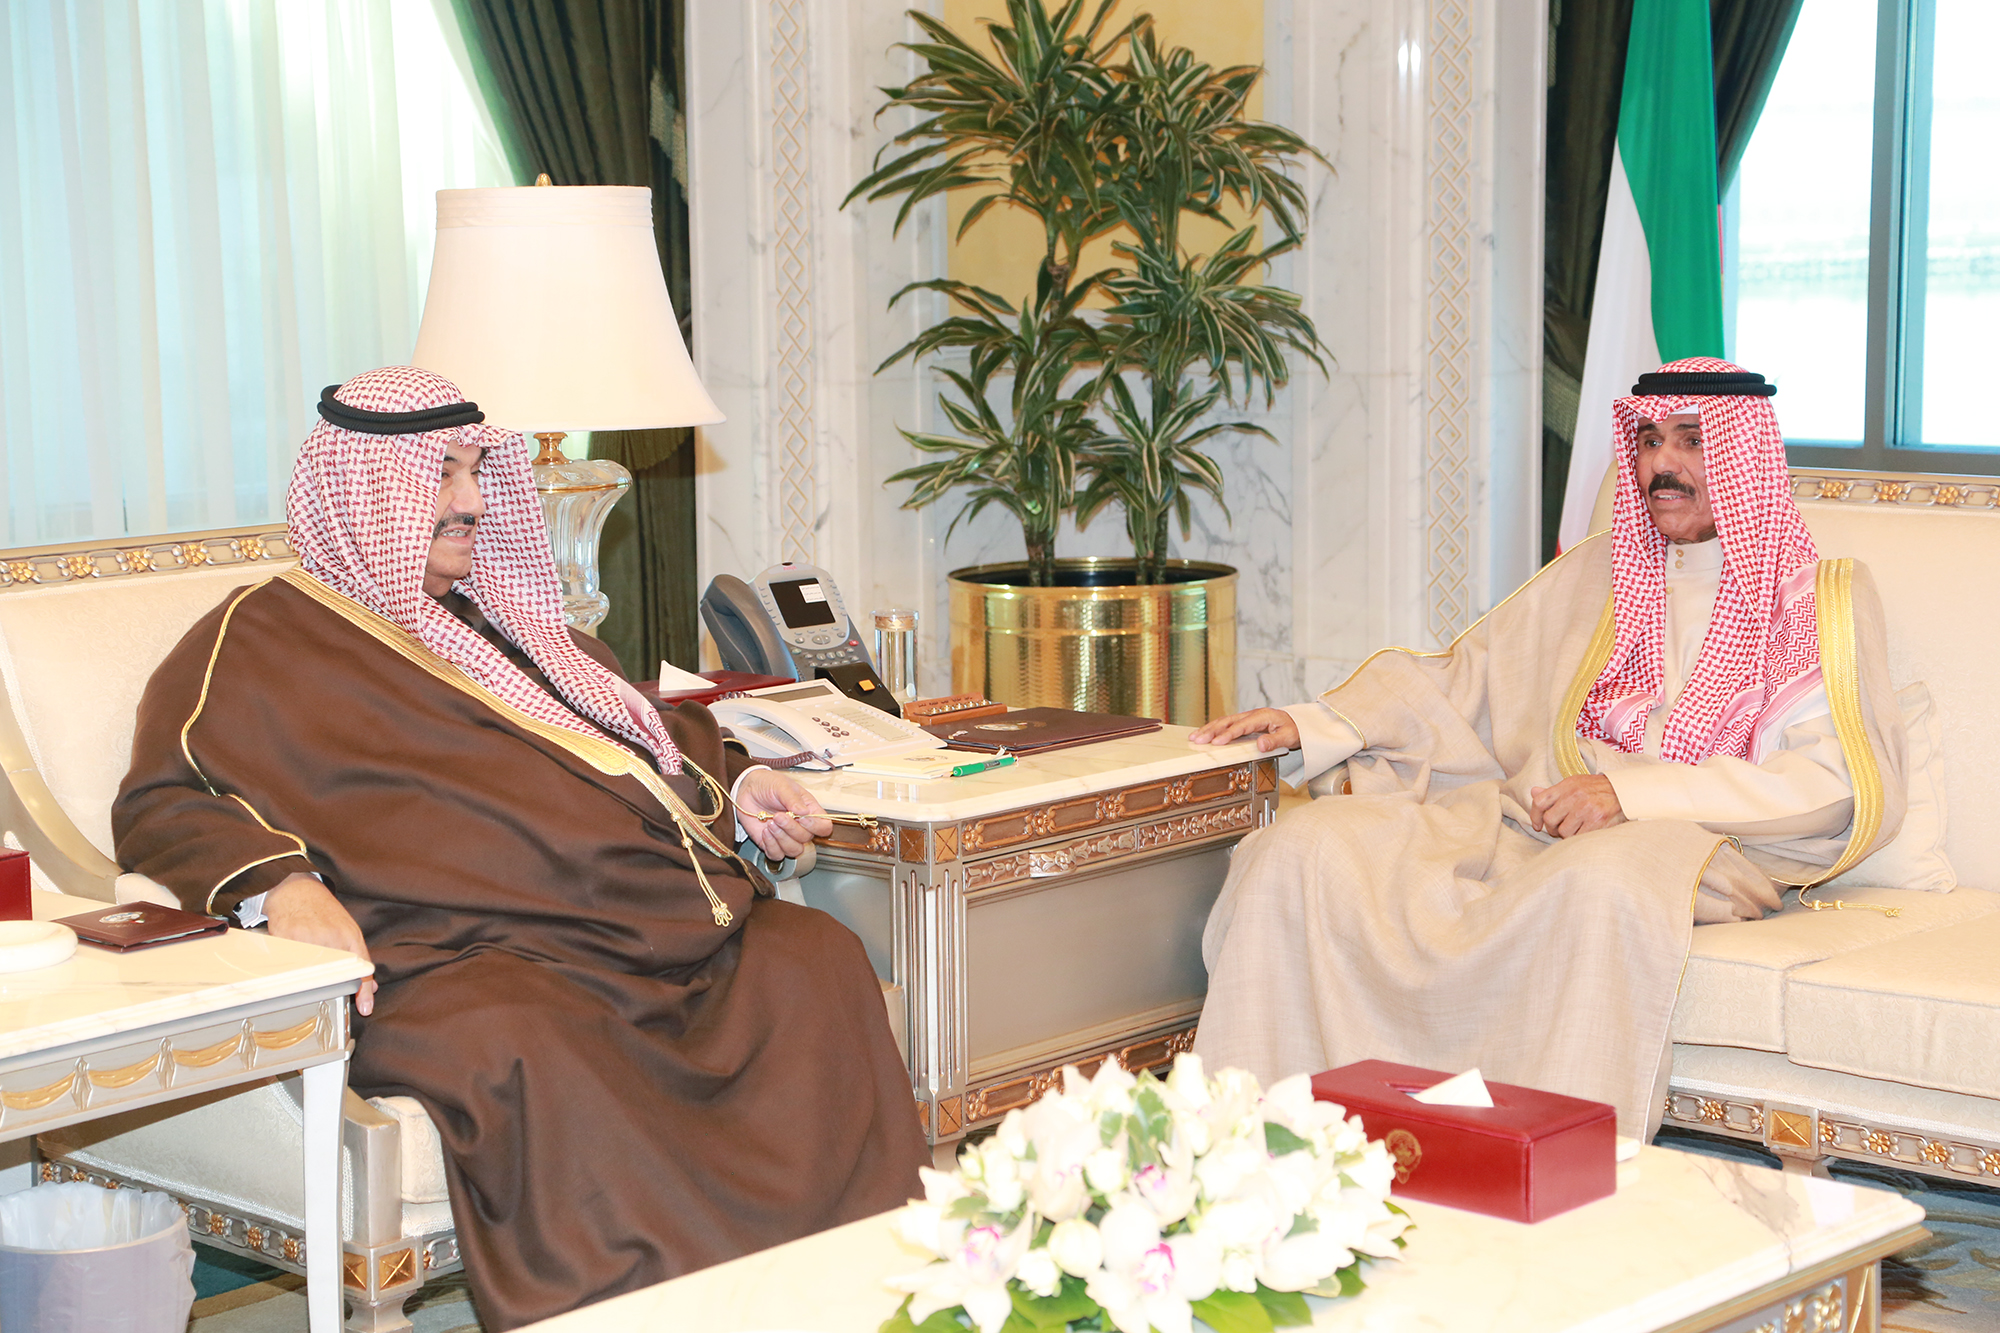 His Highness the Crown Prince Sheikh Nawaf Al-Ahmad Al-Jaber Al-Sabah receives His Highness Sheikh Nasser Al-Mohammad Al-Ahmad Al-Sabah